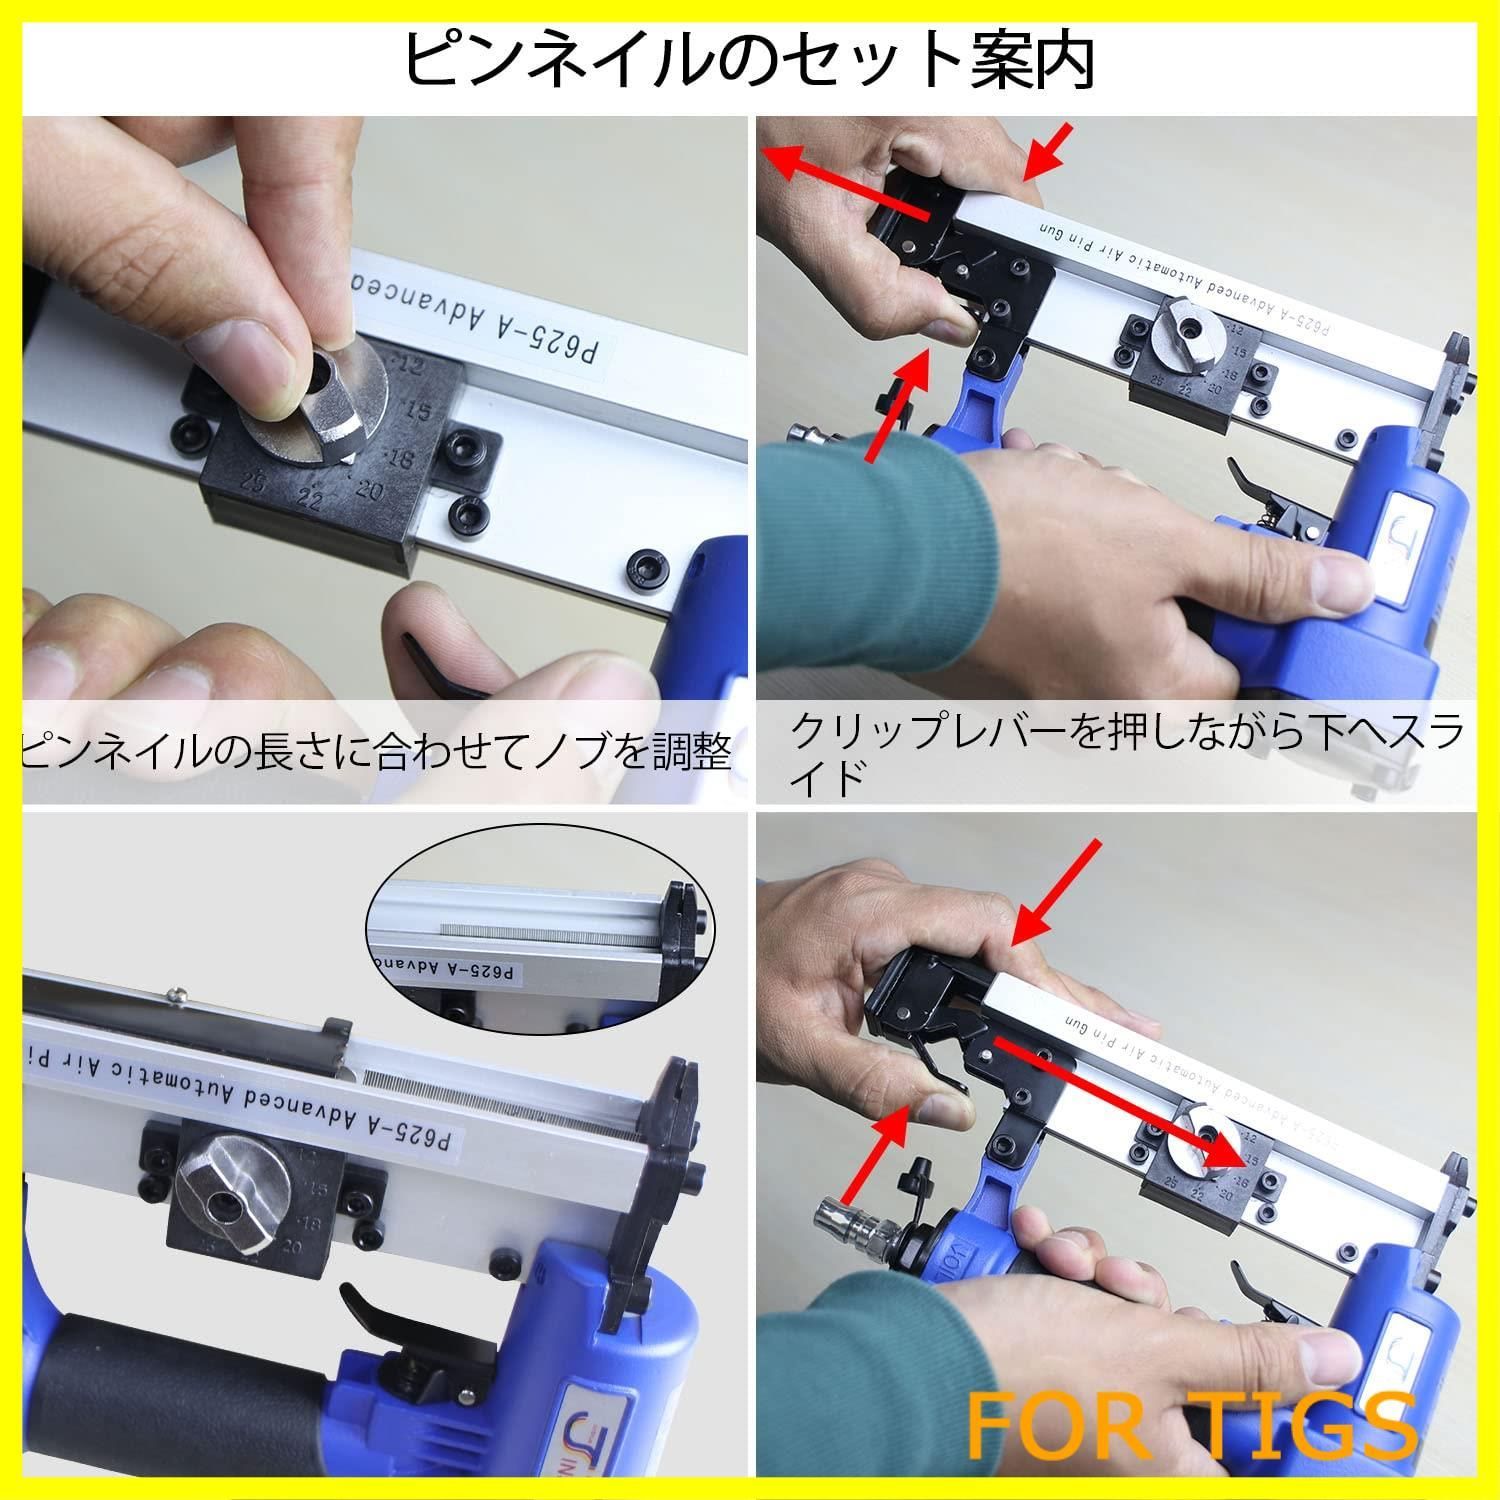 【数量限定】Sutekus エアーピンタッカー エアピン釘打機 釘足長 12~25mm 仕上げ用 幅0.6mmピンネイル使用 常圧 ピンネイル600本 木工ツール 日本語取説付き